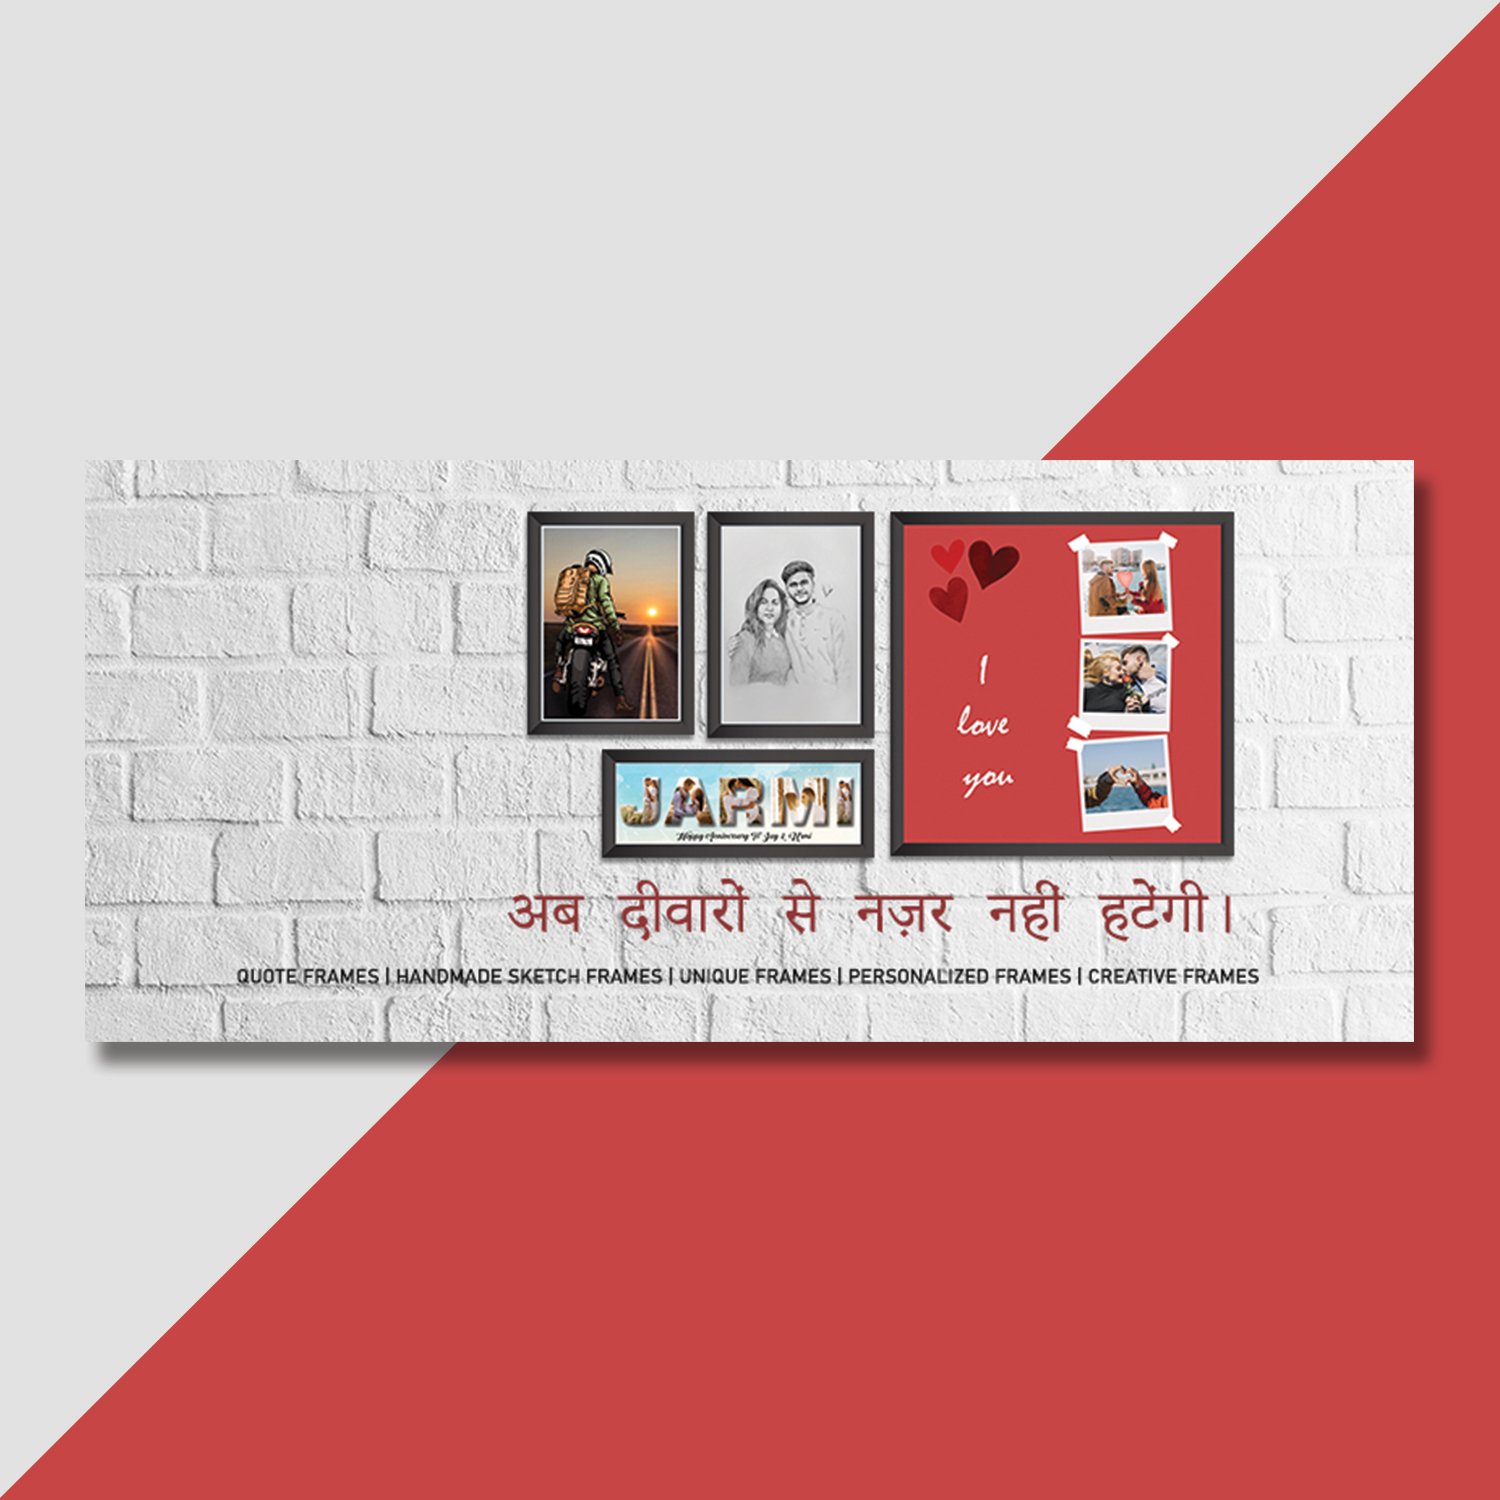 Web banner design for frame ecommerce website by Badri design